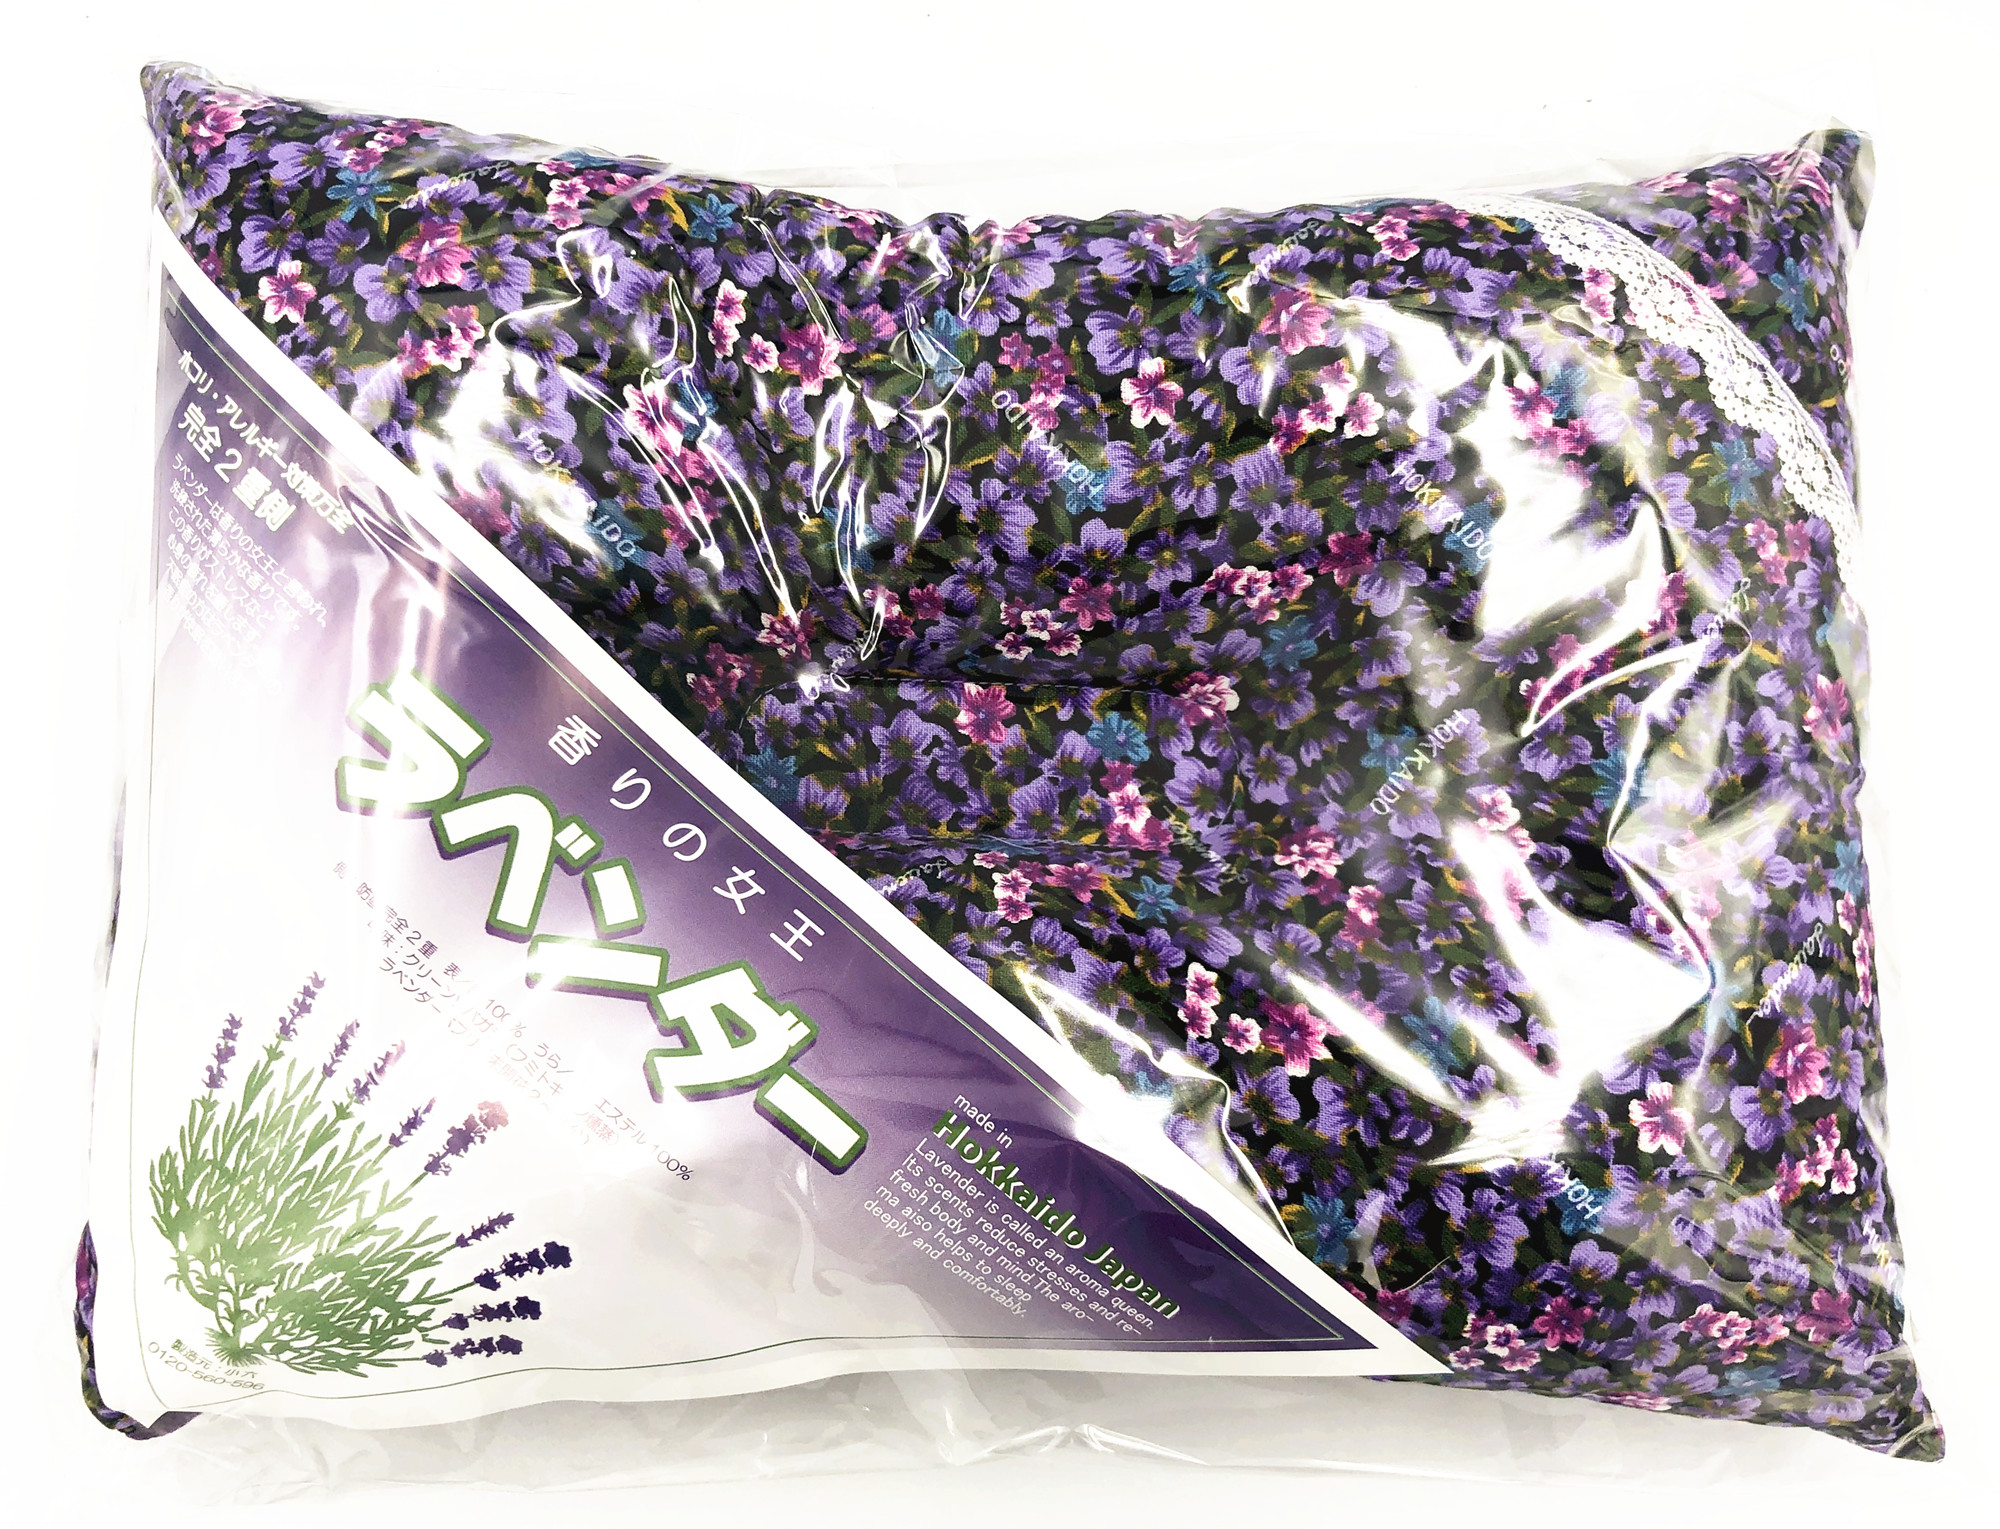 楽天市場 北海道限定 香りの女王 ラベンダー枕 国産そばがら100 使用 Lavender Pillow Made In Hokkaido 北海道小六